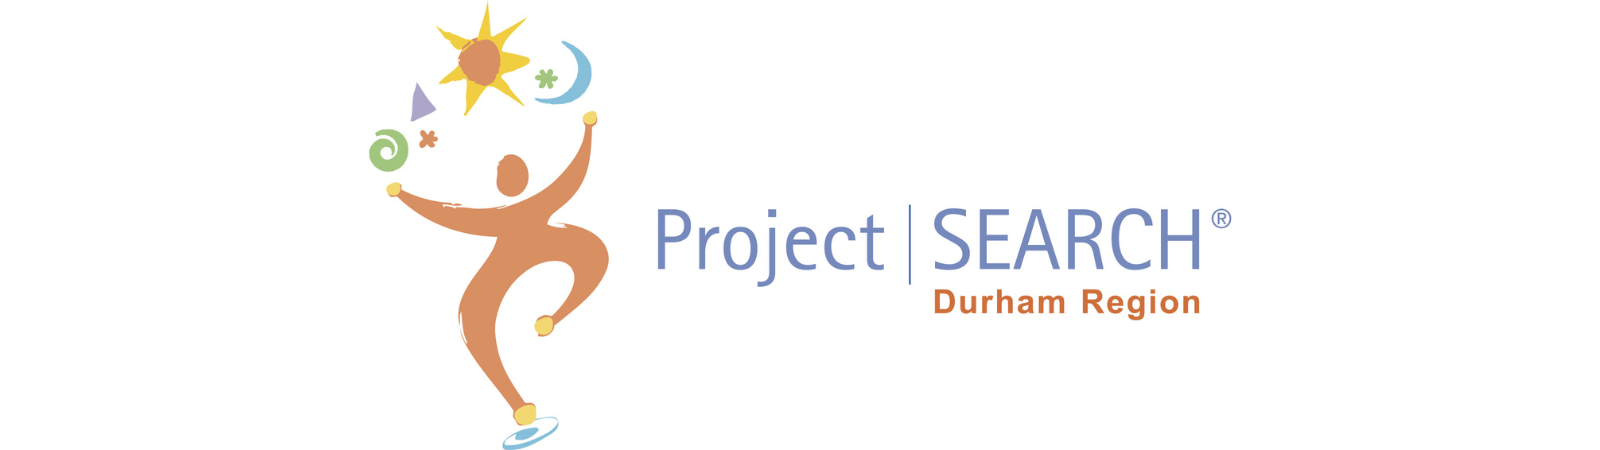 Project SEARCH Durham Region logo